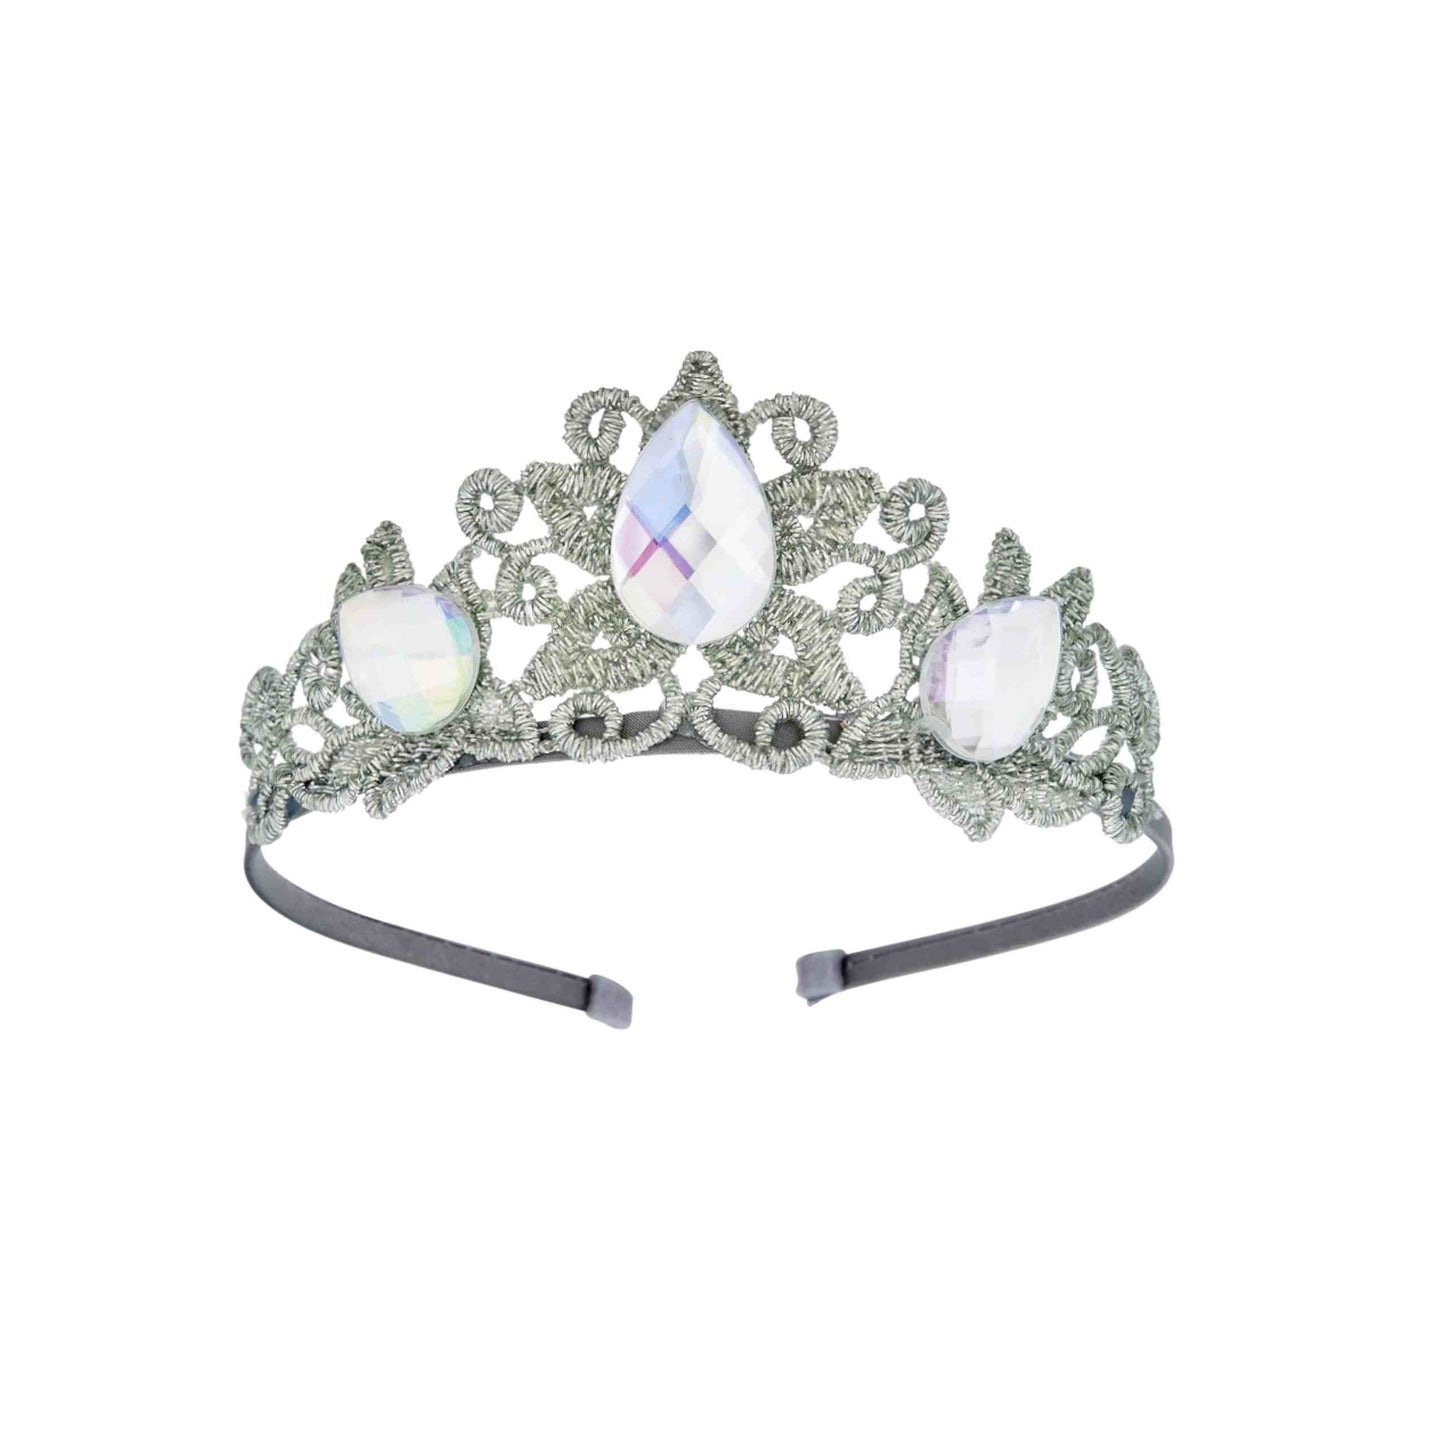 Raven Princess Crown & Wand Set, Silver & Ivory